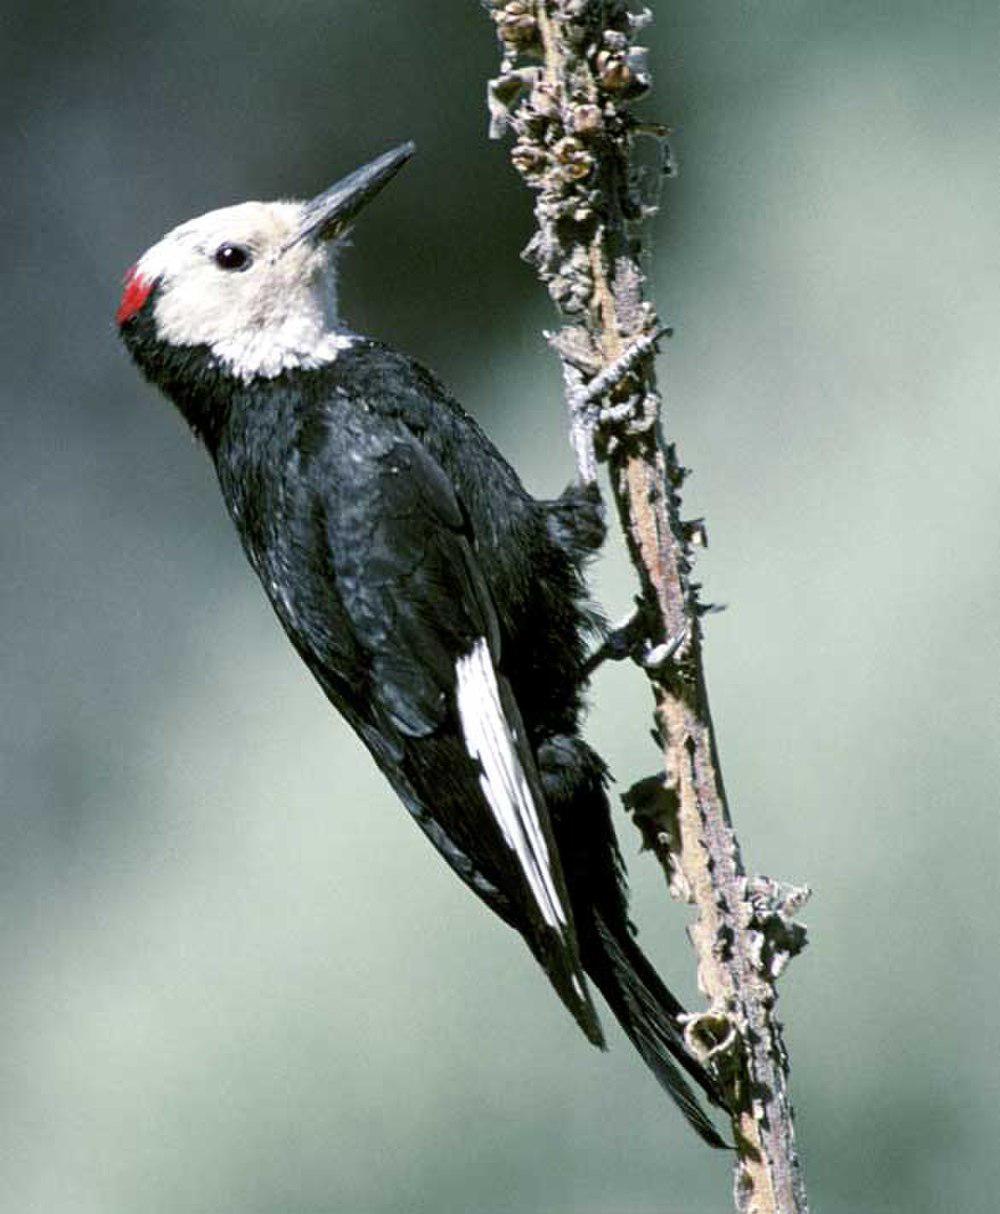 白头啄木鸟 / White-headed Woodpecker / Leuconotopicus albolarvatus